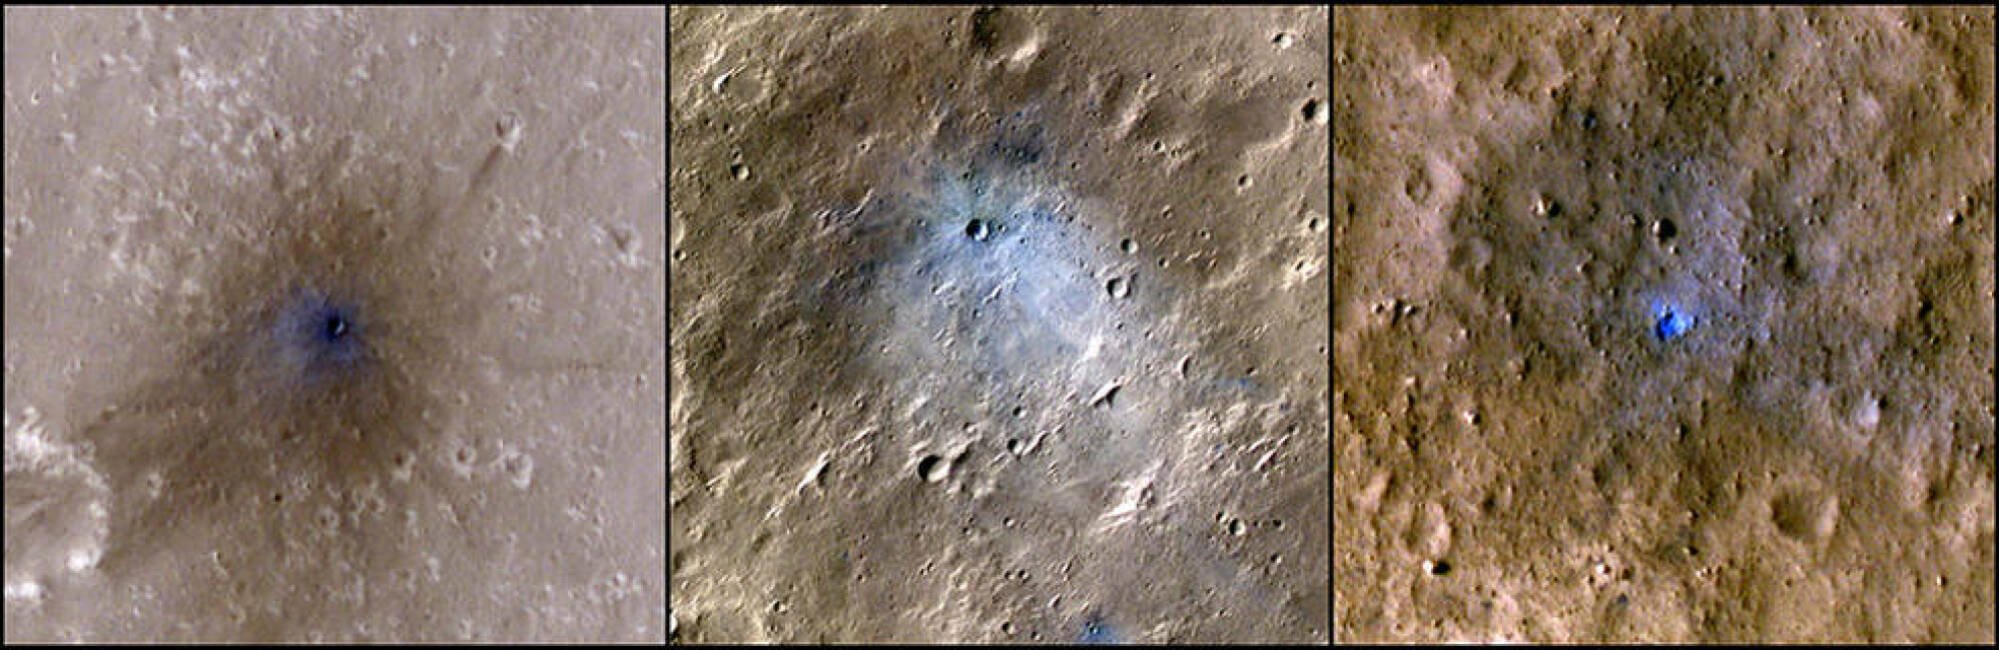 meteroid impacts on Mars